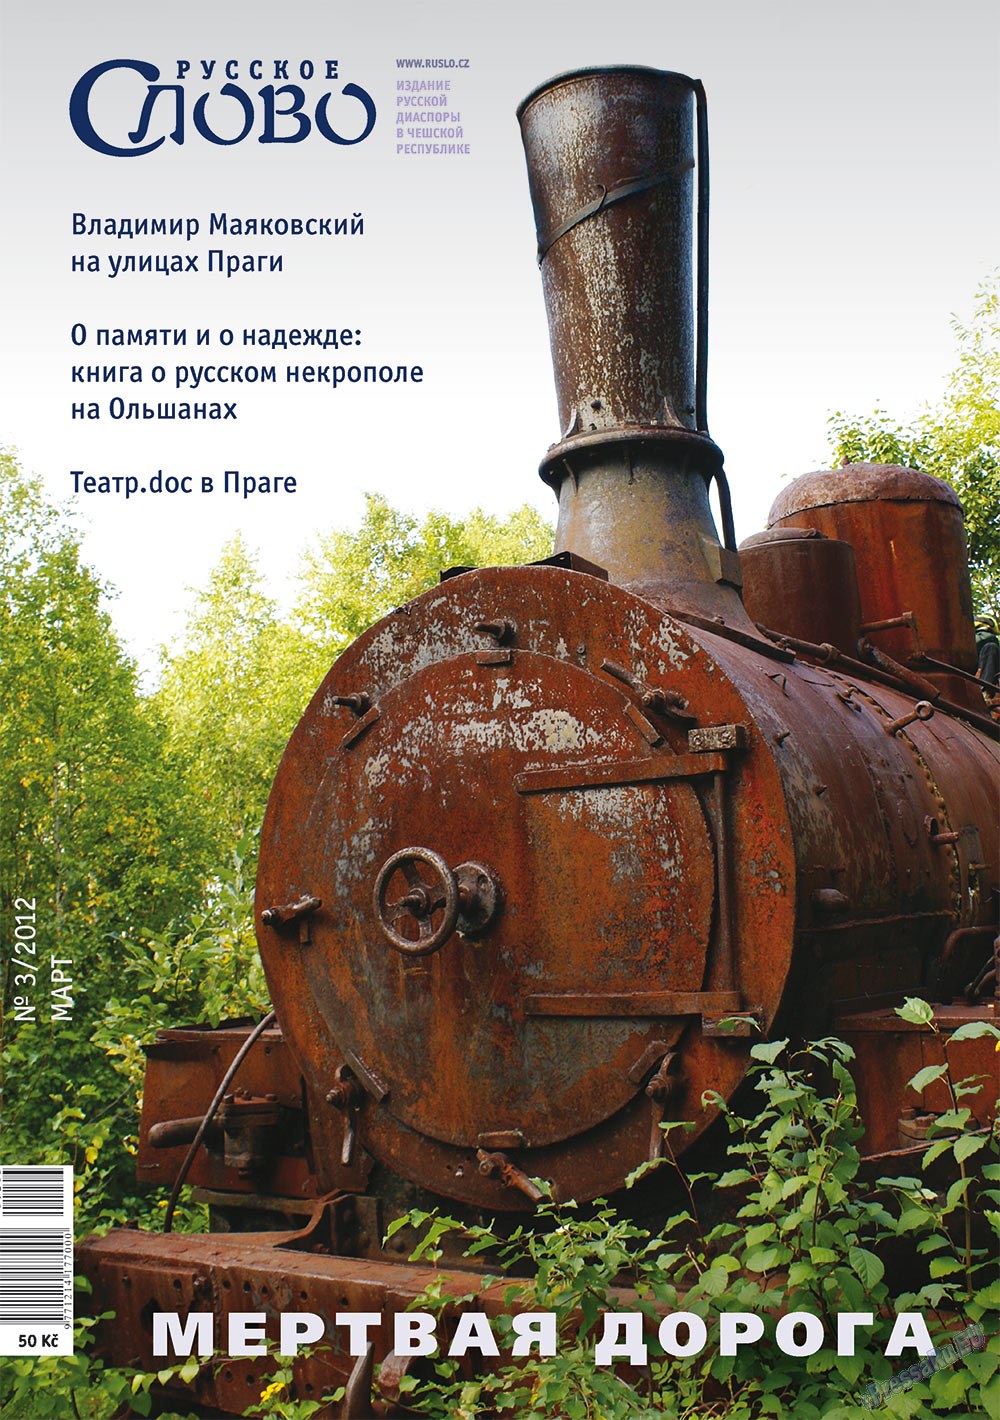 Русское слово (журнал). 2012 год, номер 3, стр. 1